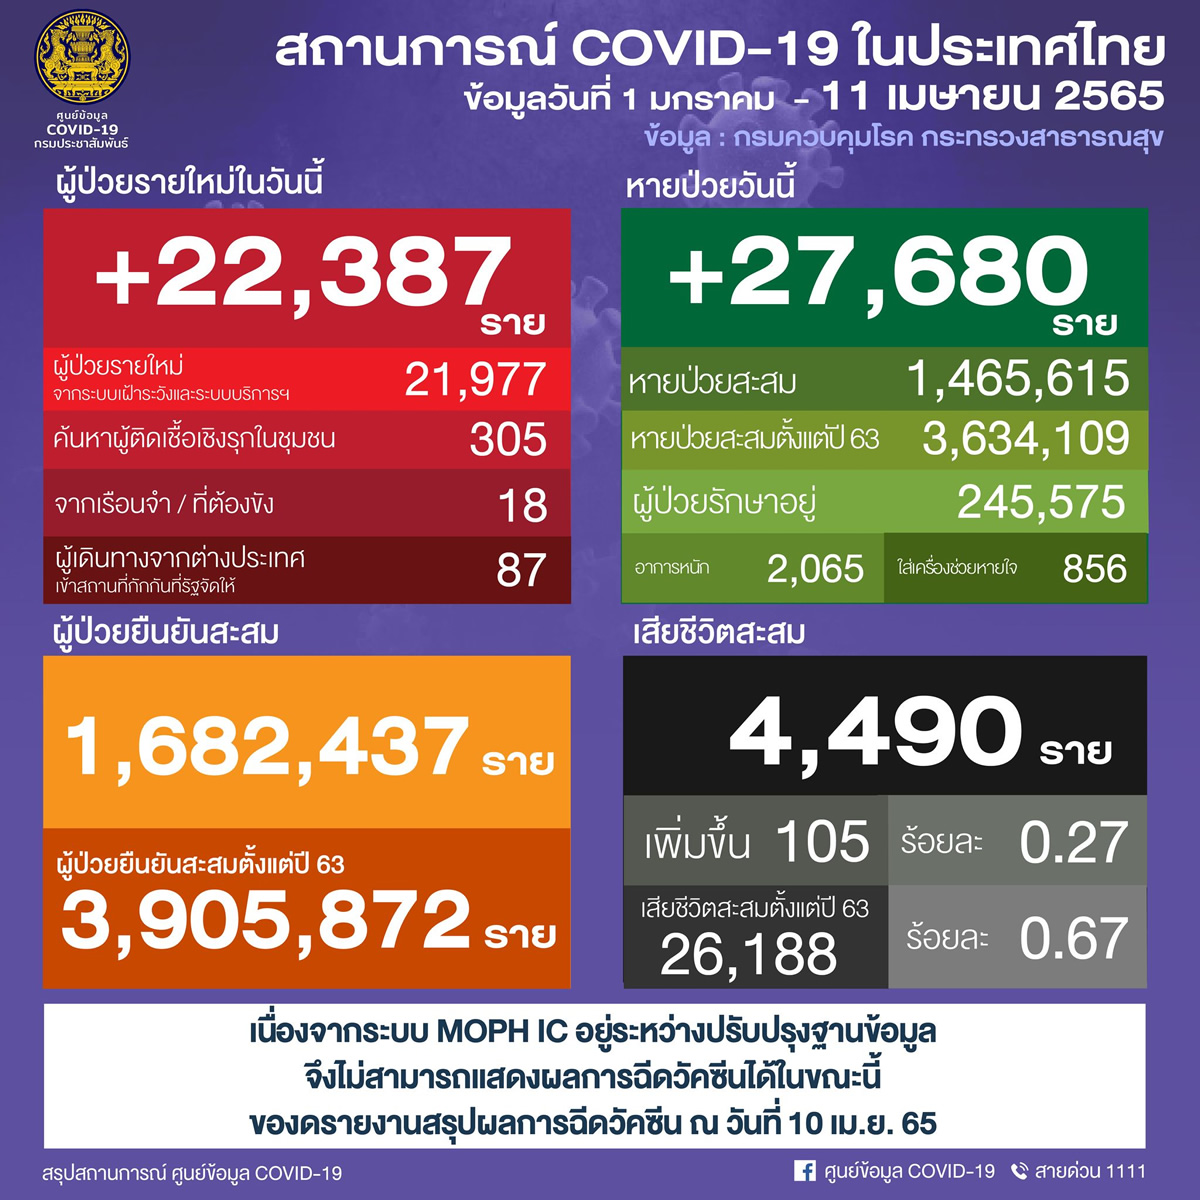 タイ 22,387人陽性 105人死亡／バンコク 3,174人陽性／チョンブリ 1,036人陽性／ナコンシータマラート 831人陽性［2022年4月11日発表］